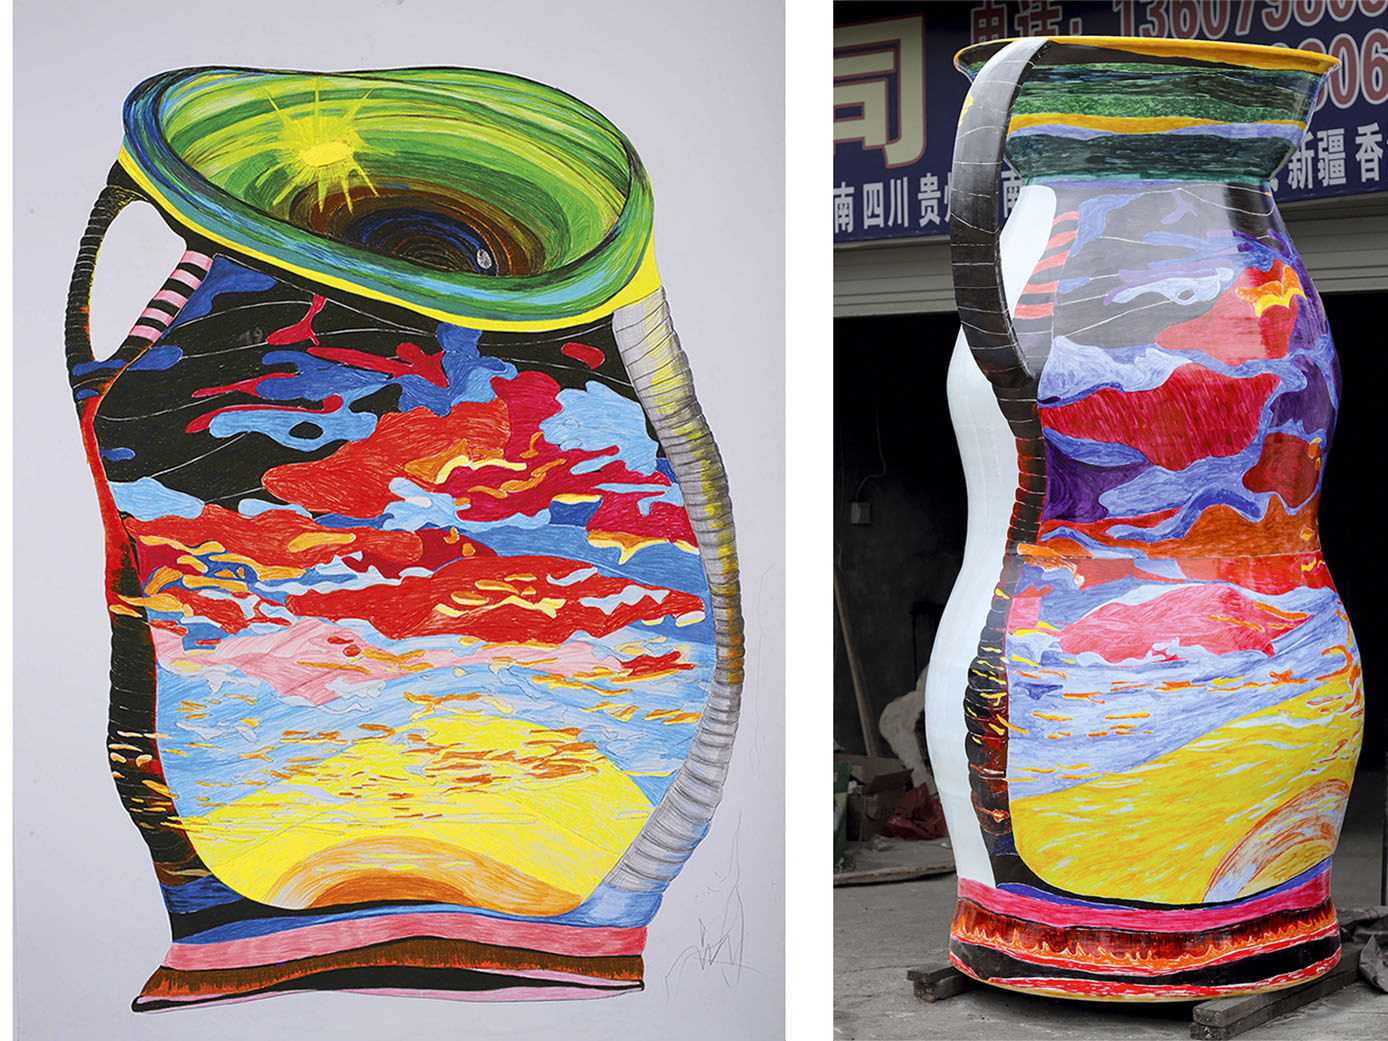 OPEN SHAPE 19 / Uli Aigner 2014 / 180 x 270 cm / colored crayon on paper & ONE MILLION - item 2361 - monument porcelain vessel / Uli Aigner 2017 / 230 x 113 cm / glaze painting